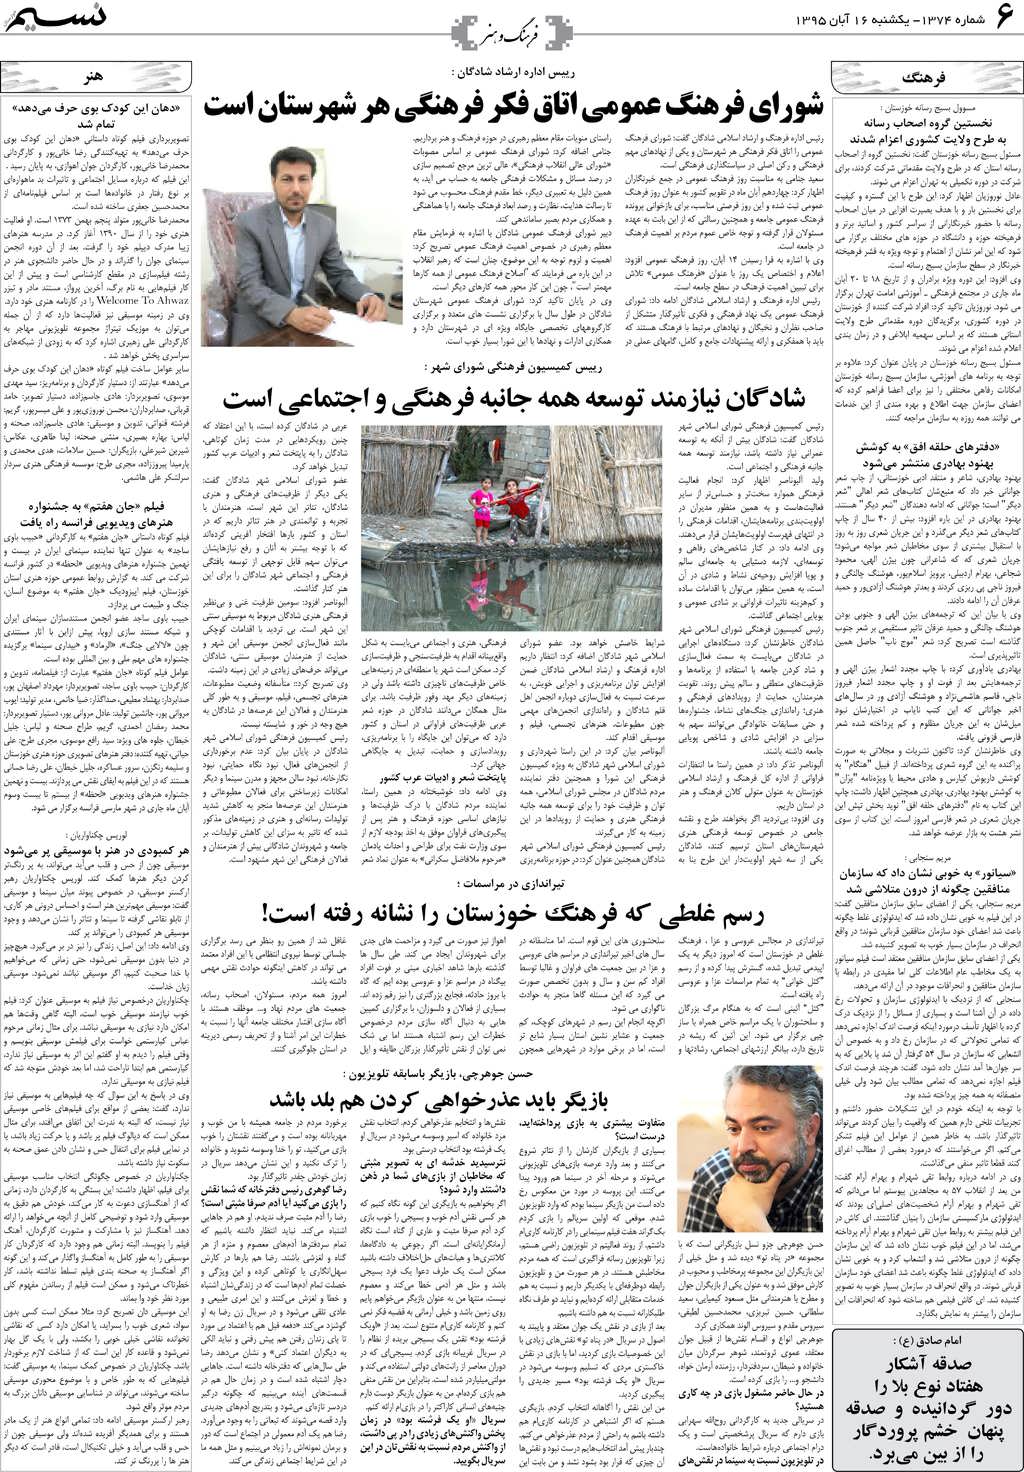 صفحه فرهنگ و هنر روزنامه نسیم شماره 1374